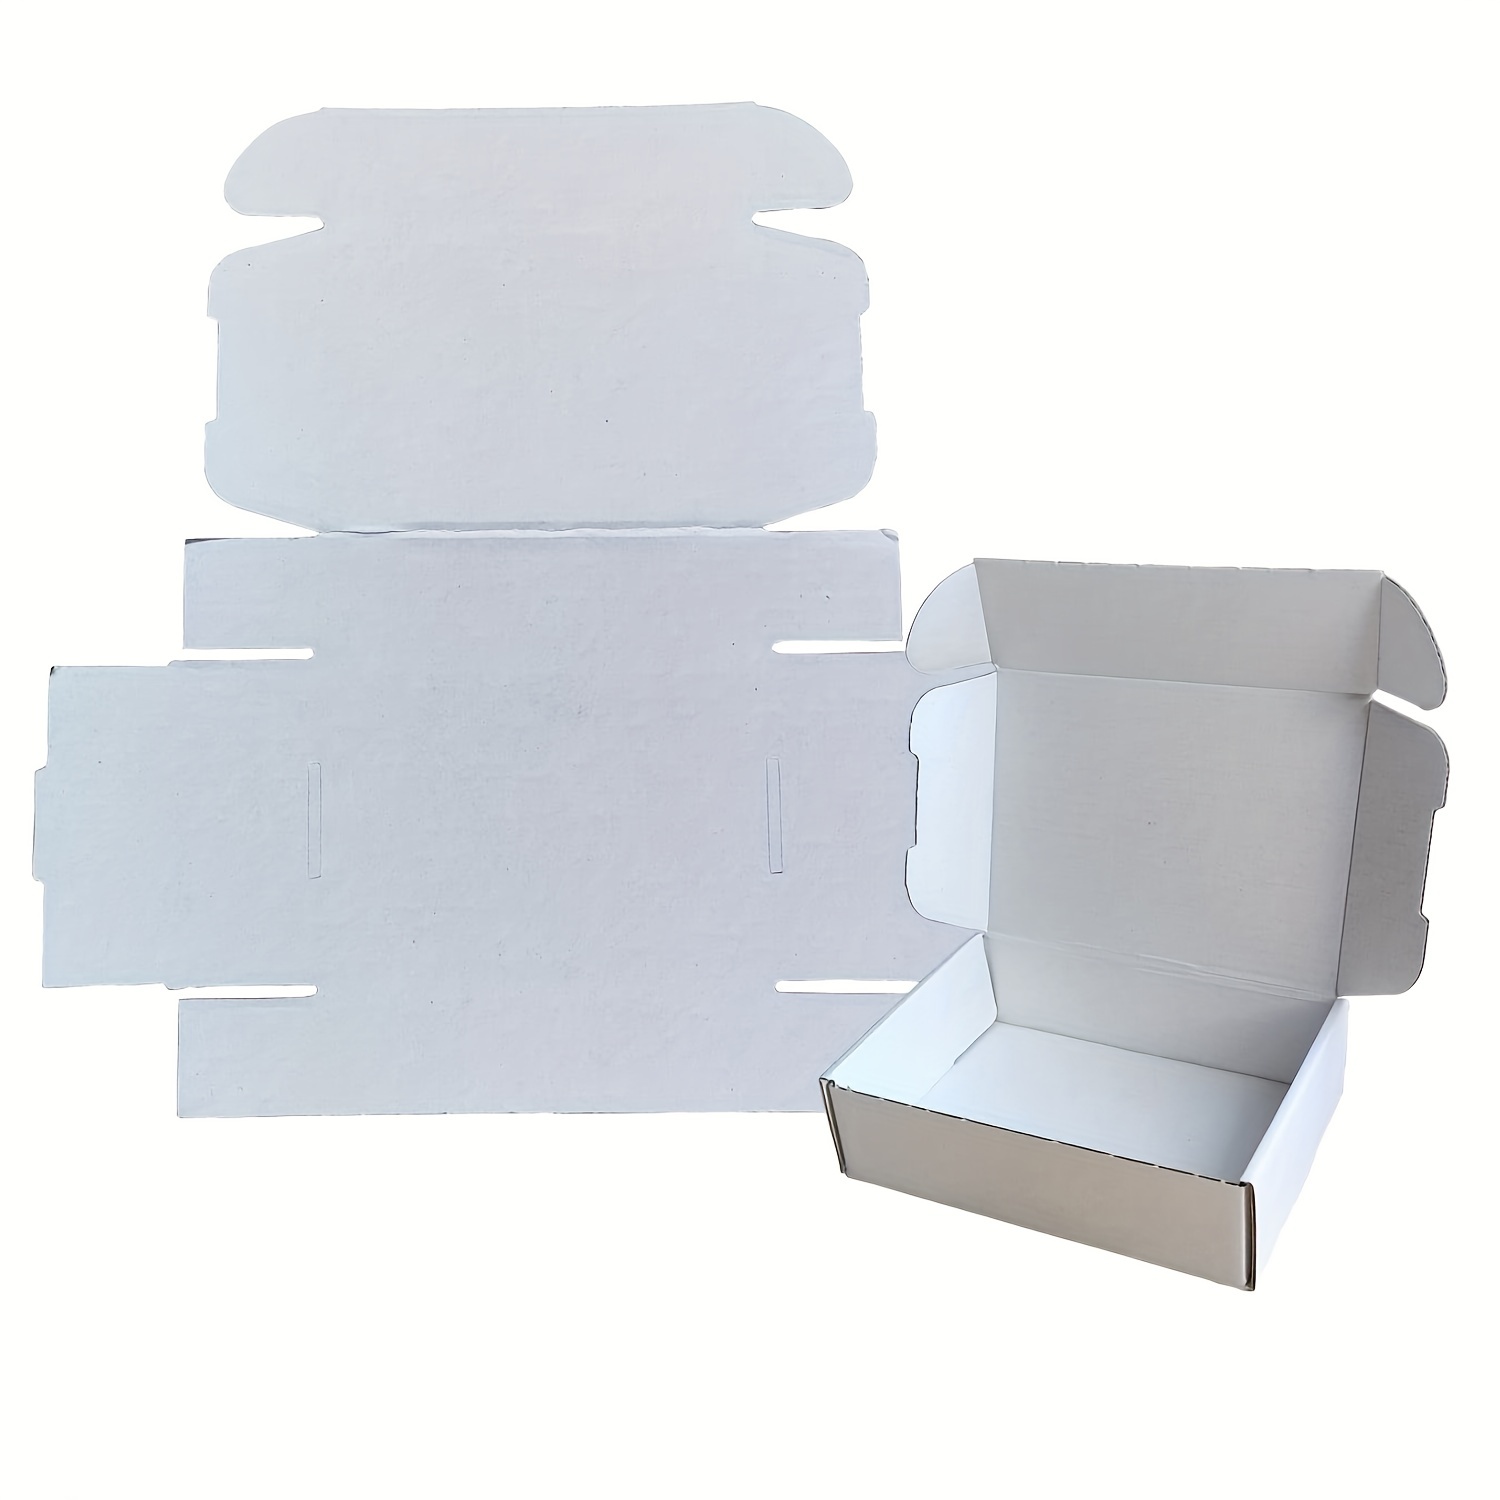  Paquete de 50 cajas de embalaje corrugado blancas de 4